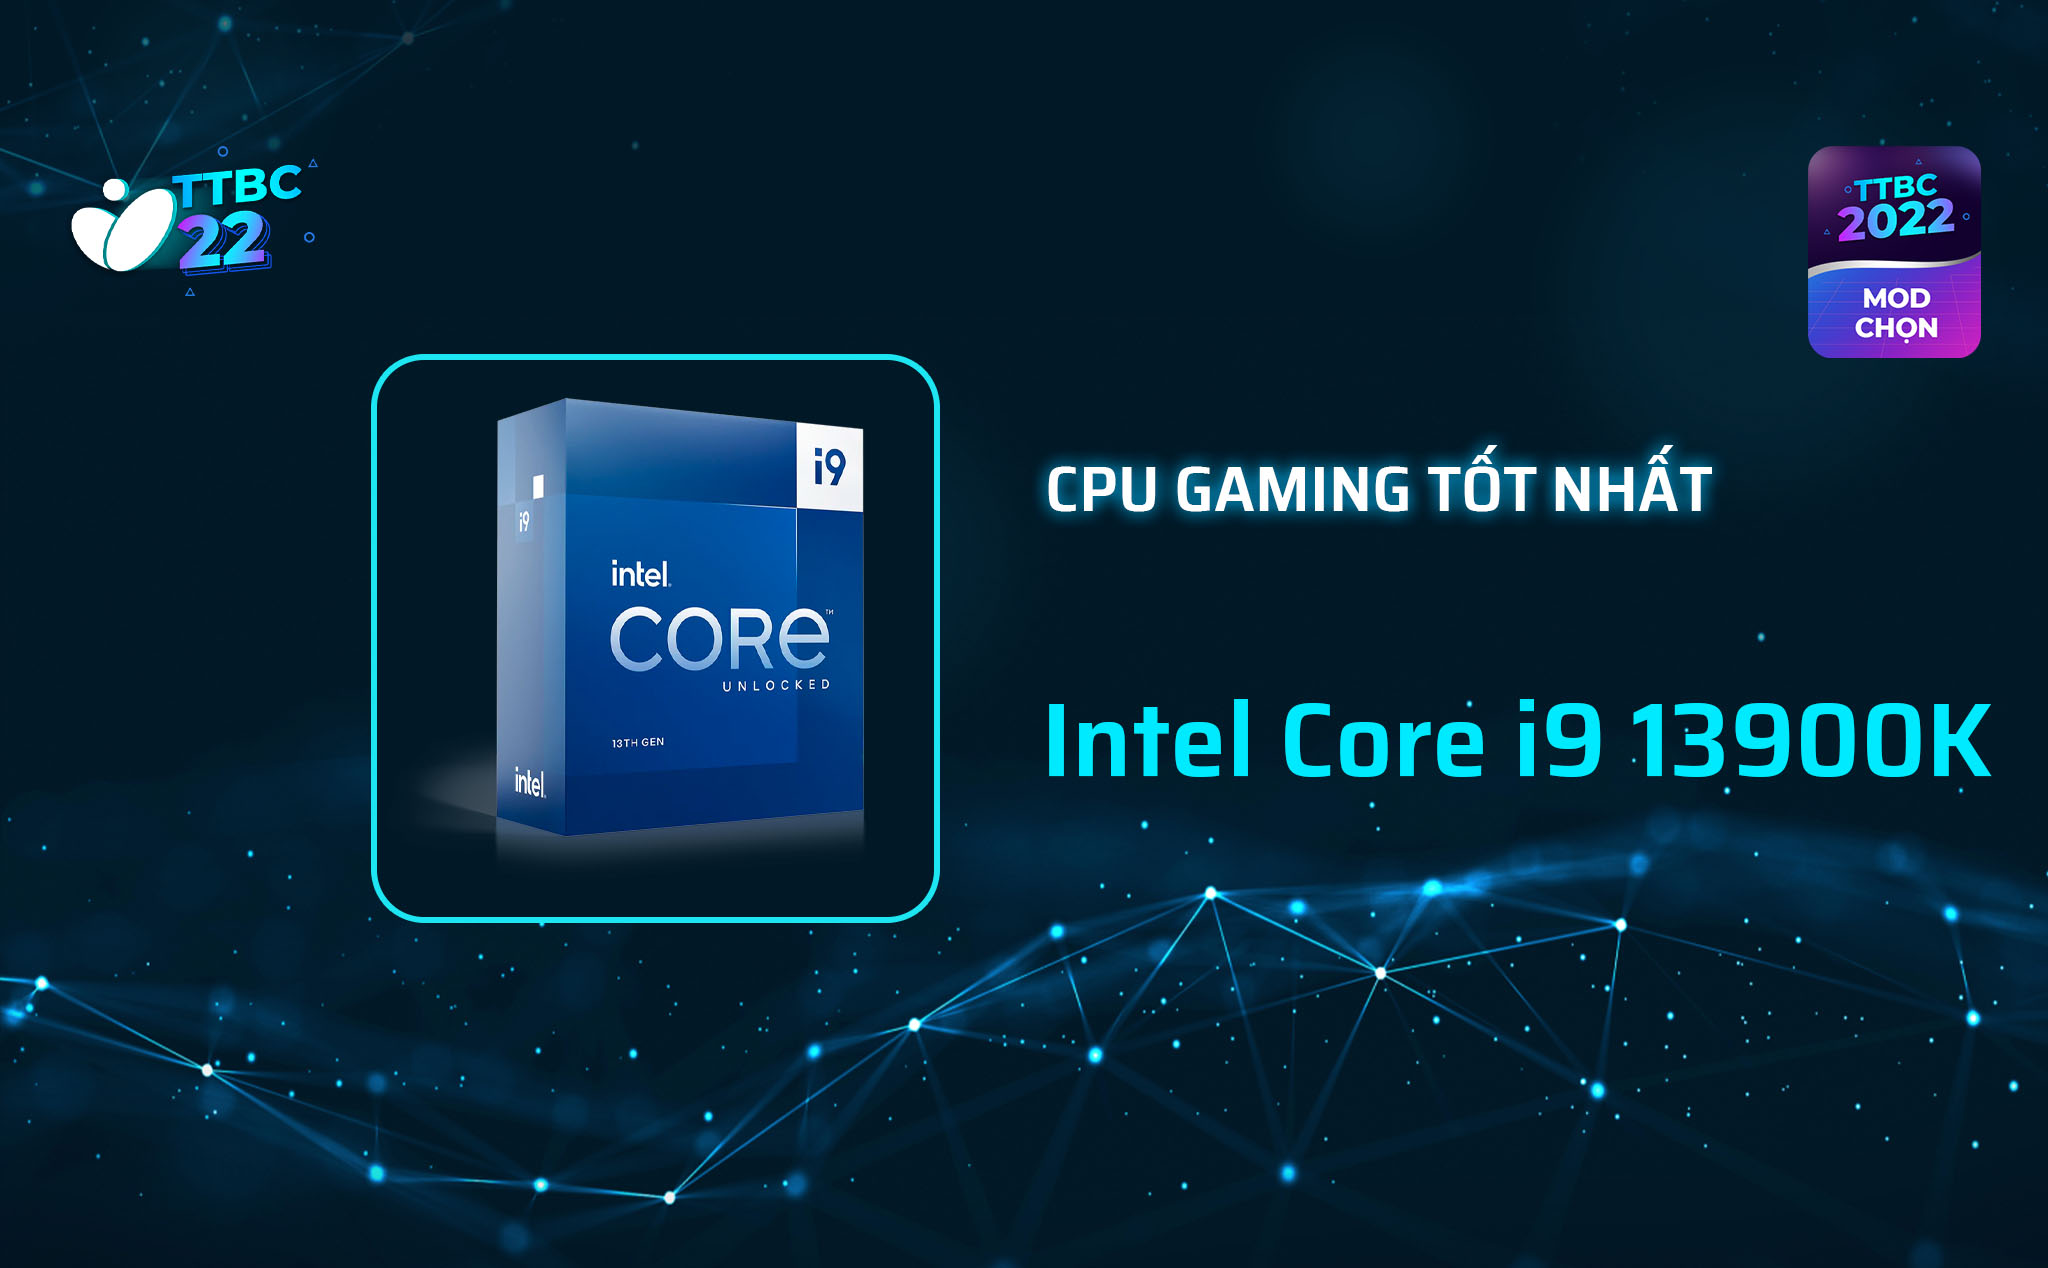 TTBC22 - Mod Choice - CPU gaming tốt nhất - Intel Core i9-13900K